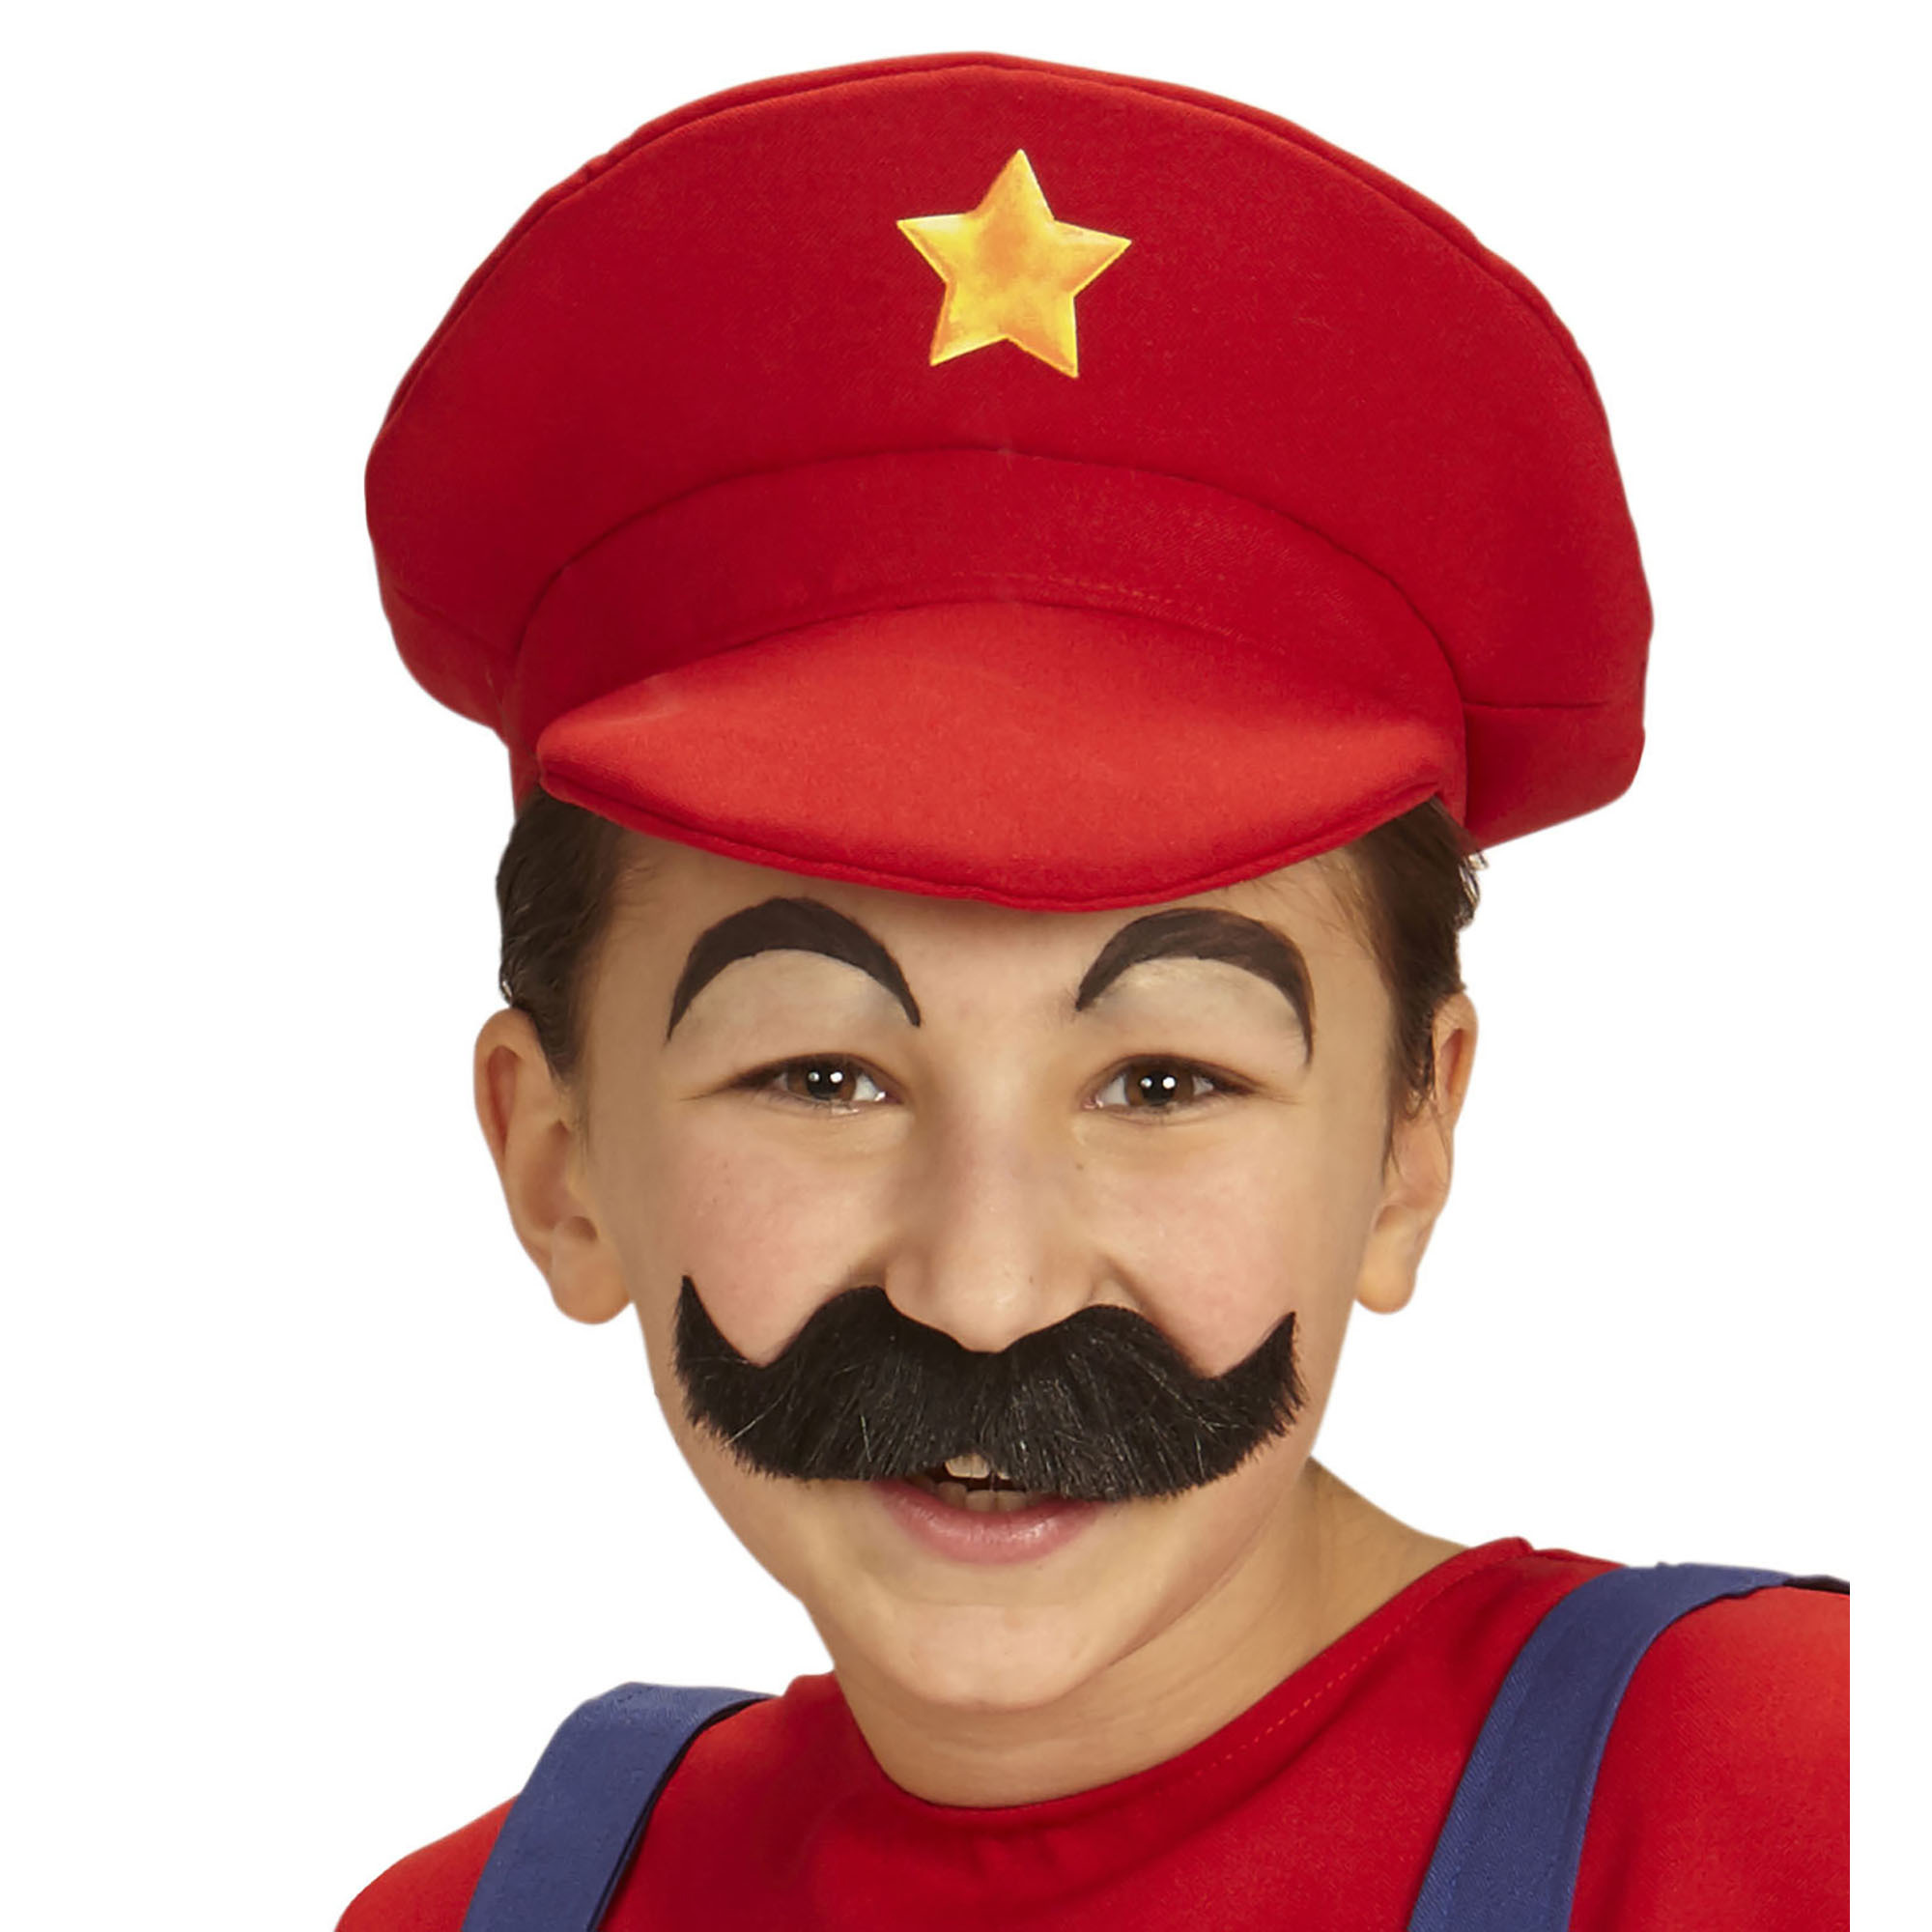 Mario pet kind rood met gele ster